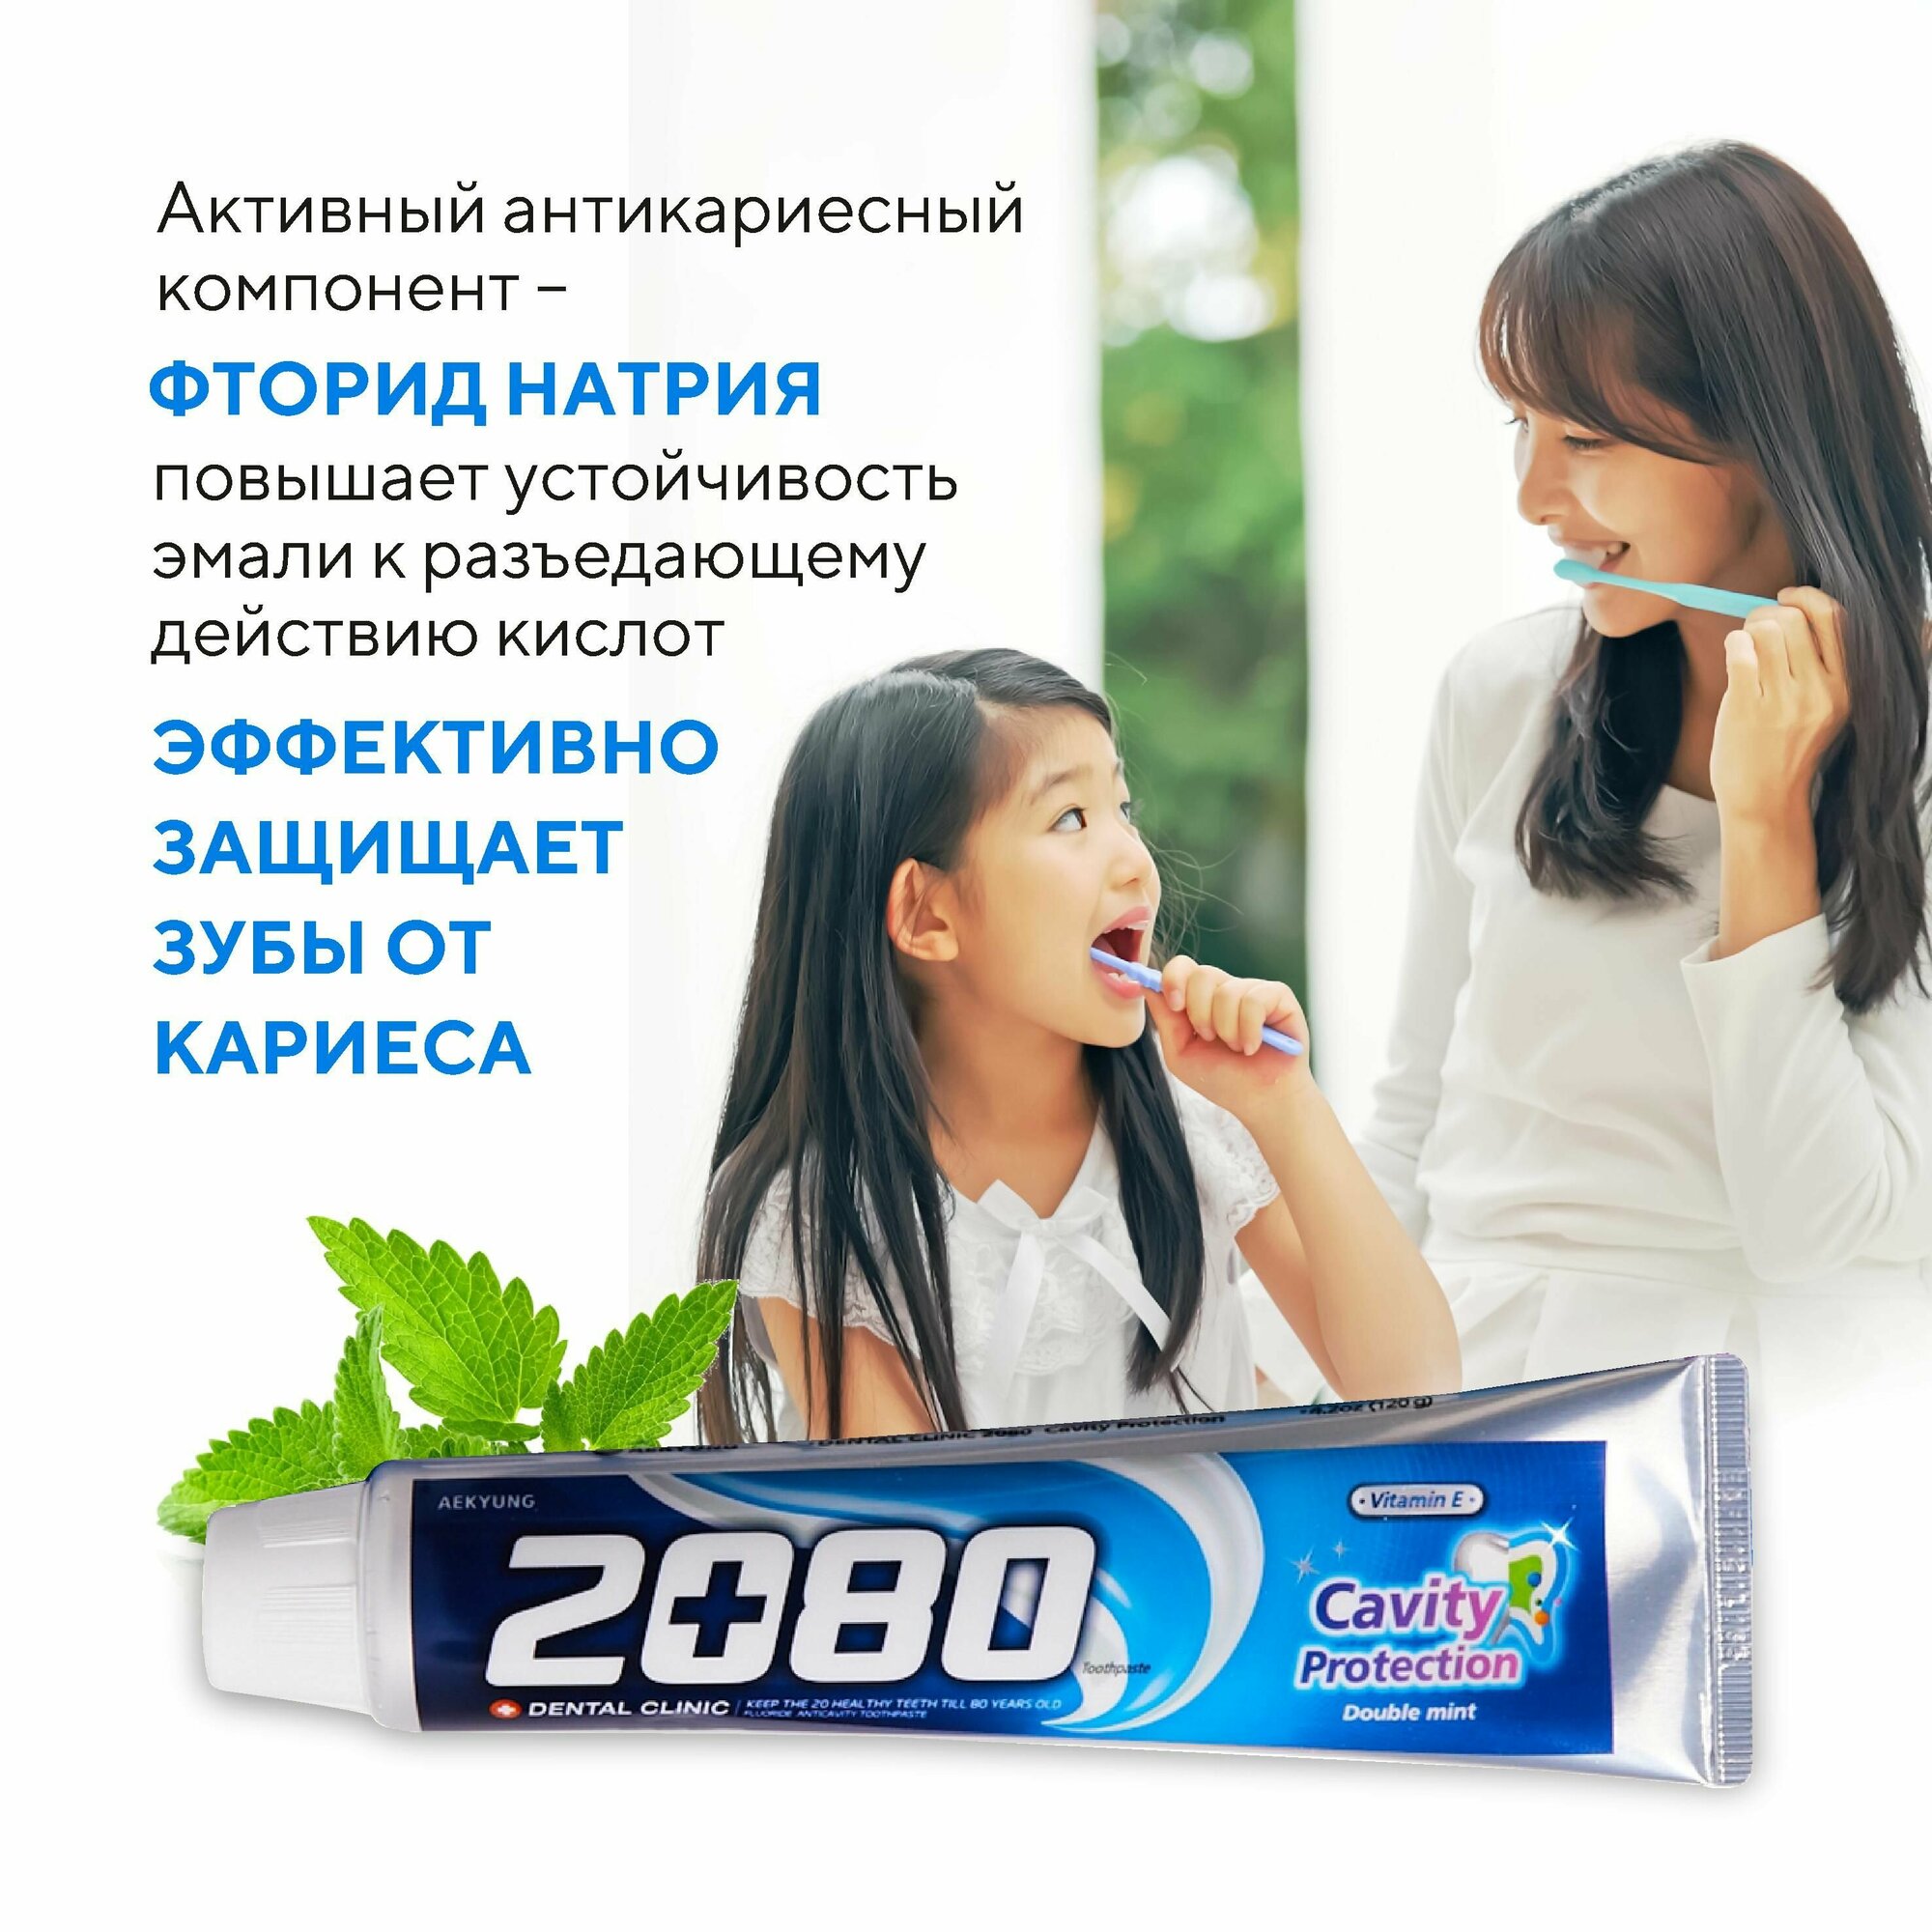 Dental Clinic 2080 Набор Зубная паста мятная Защита от кариеса и пародонтоза Двойная натуральная мята, 2 шт х 120 гр